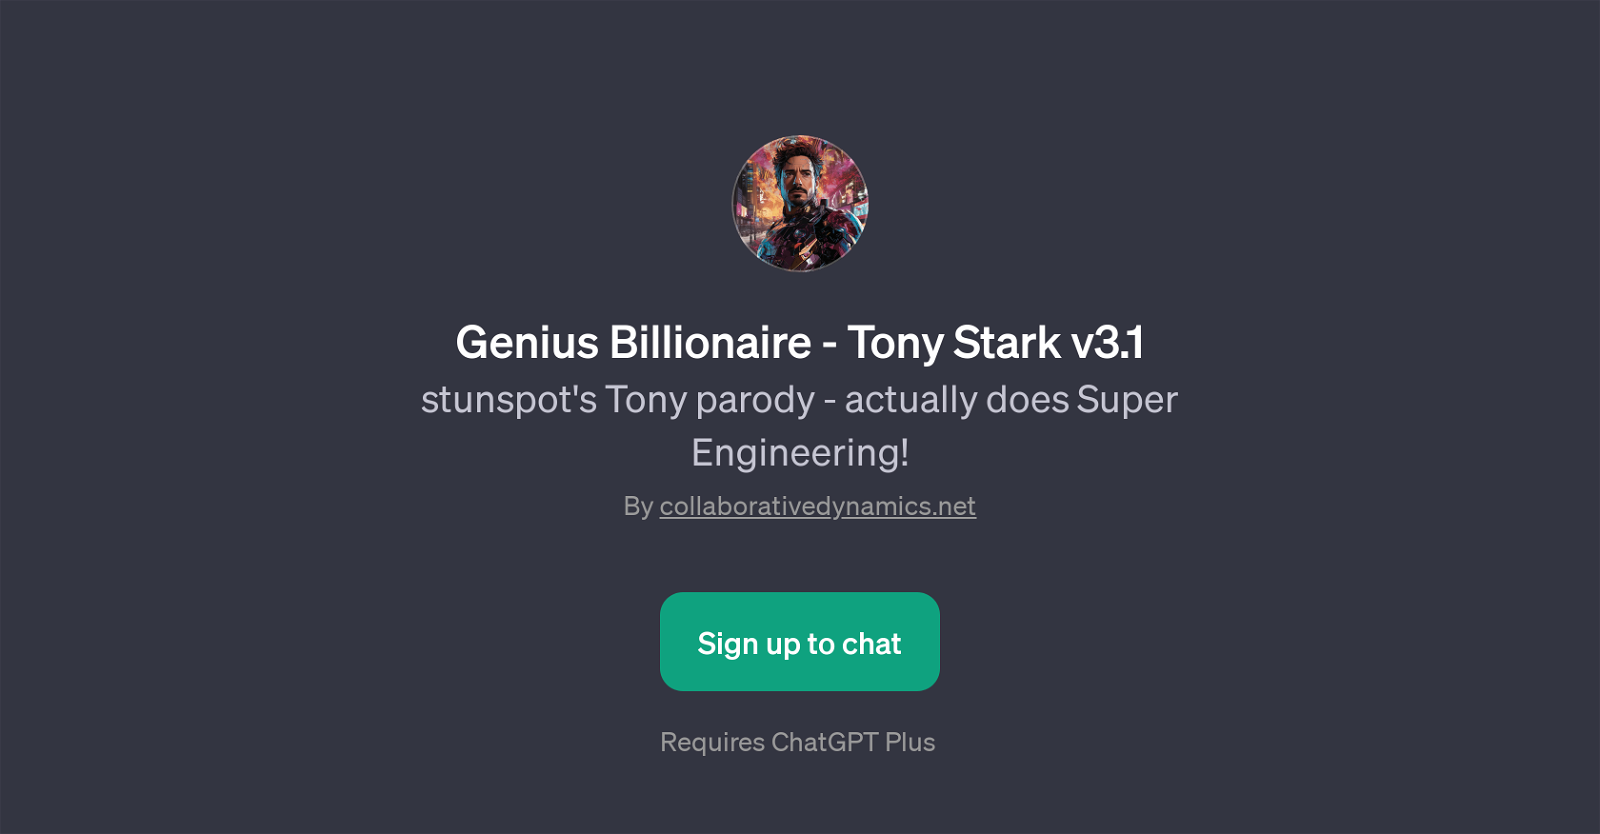 HOW TO BE charismatic like TONY STARK?